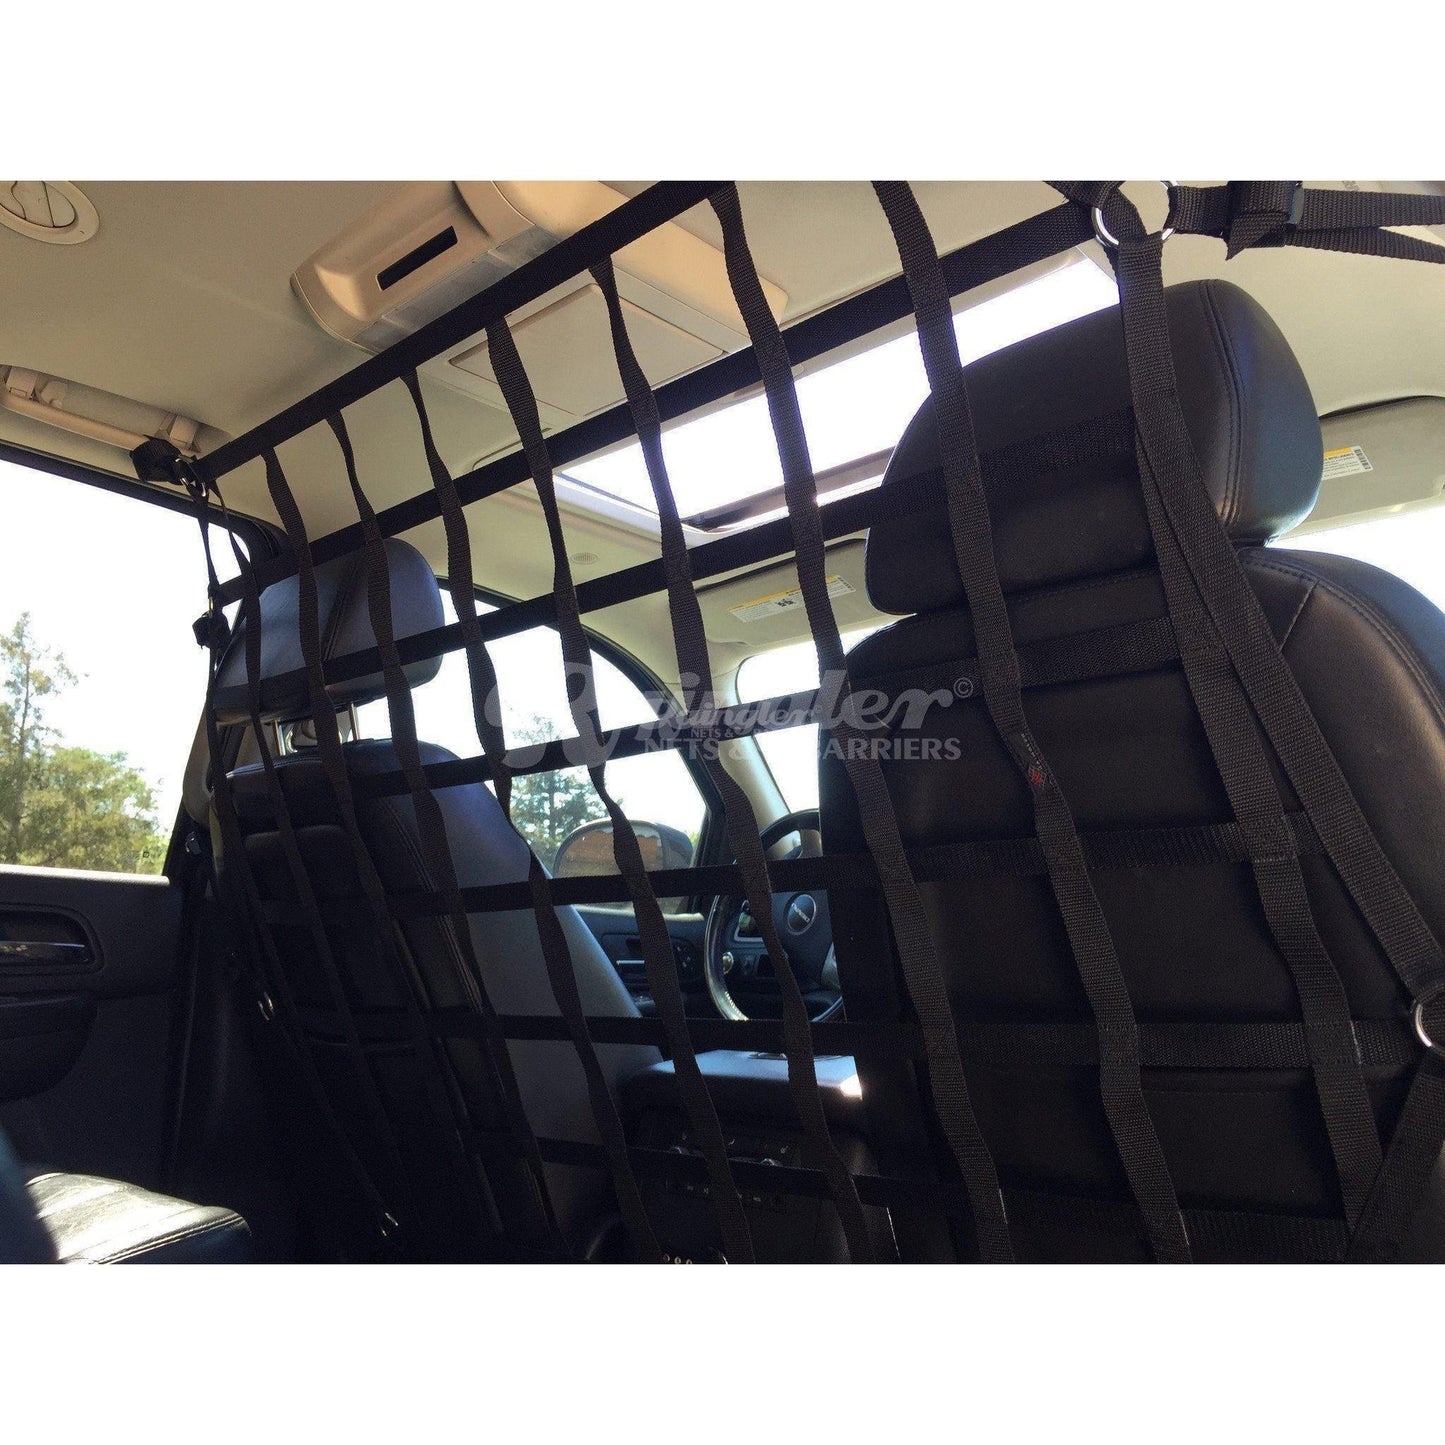 2020 - Newer Chrysler Voyager Van Behind Front Seats Barrier Divider Net